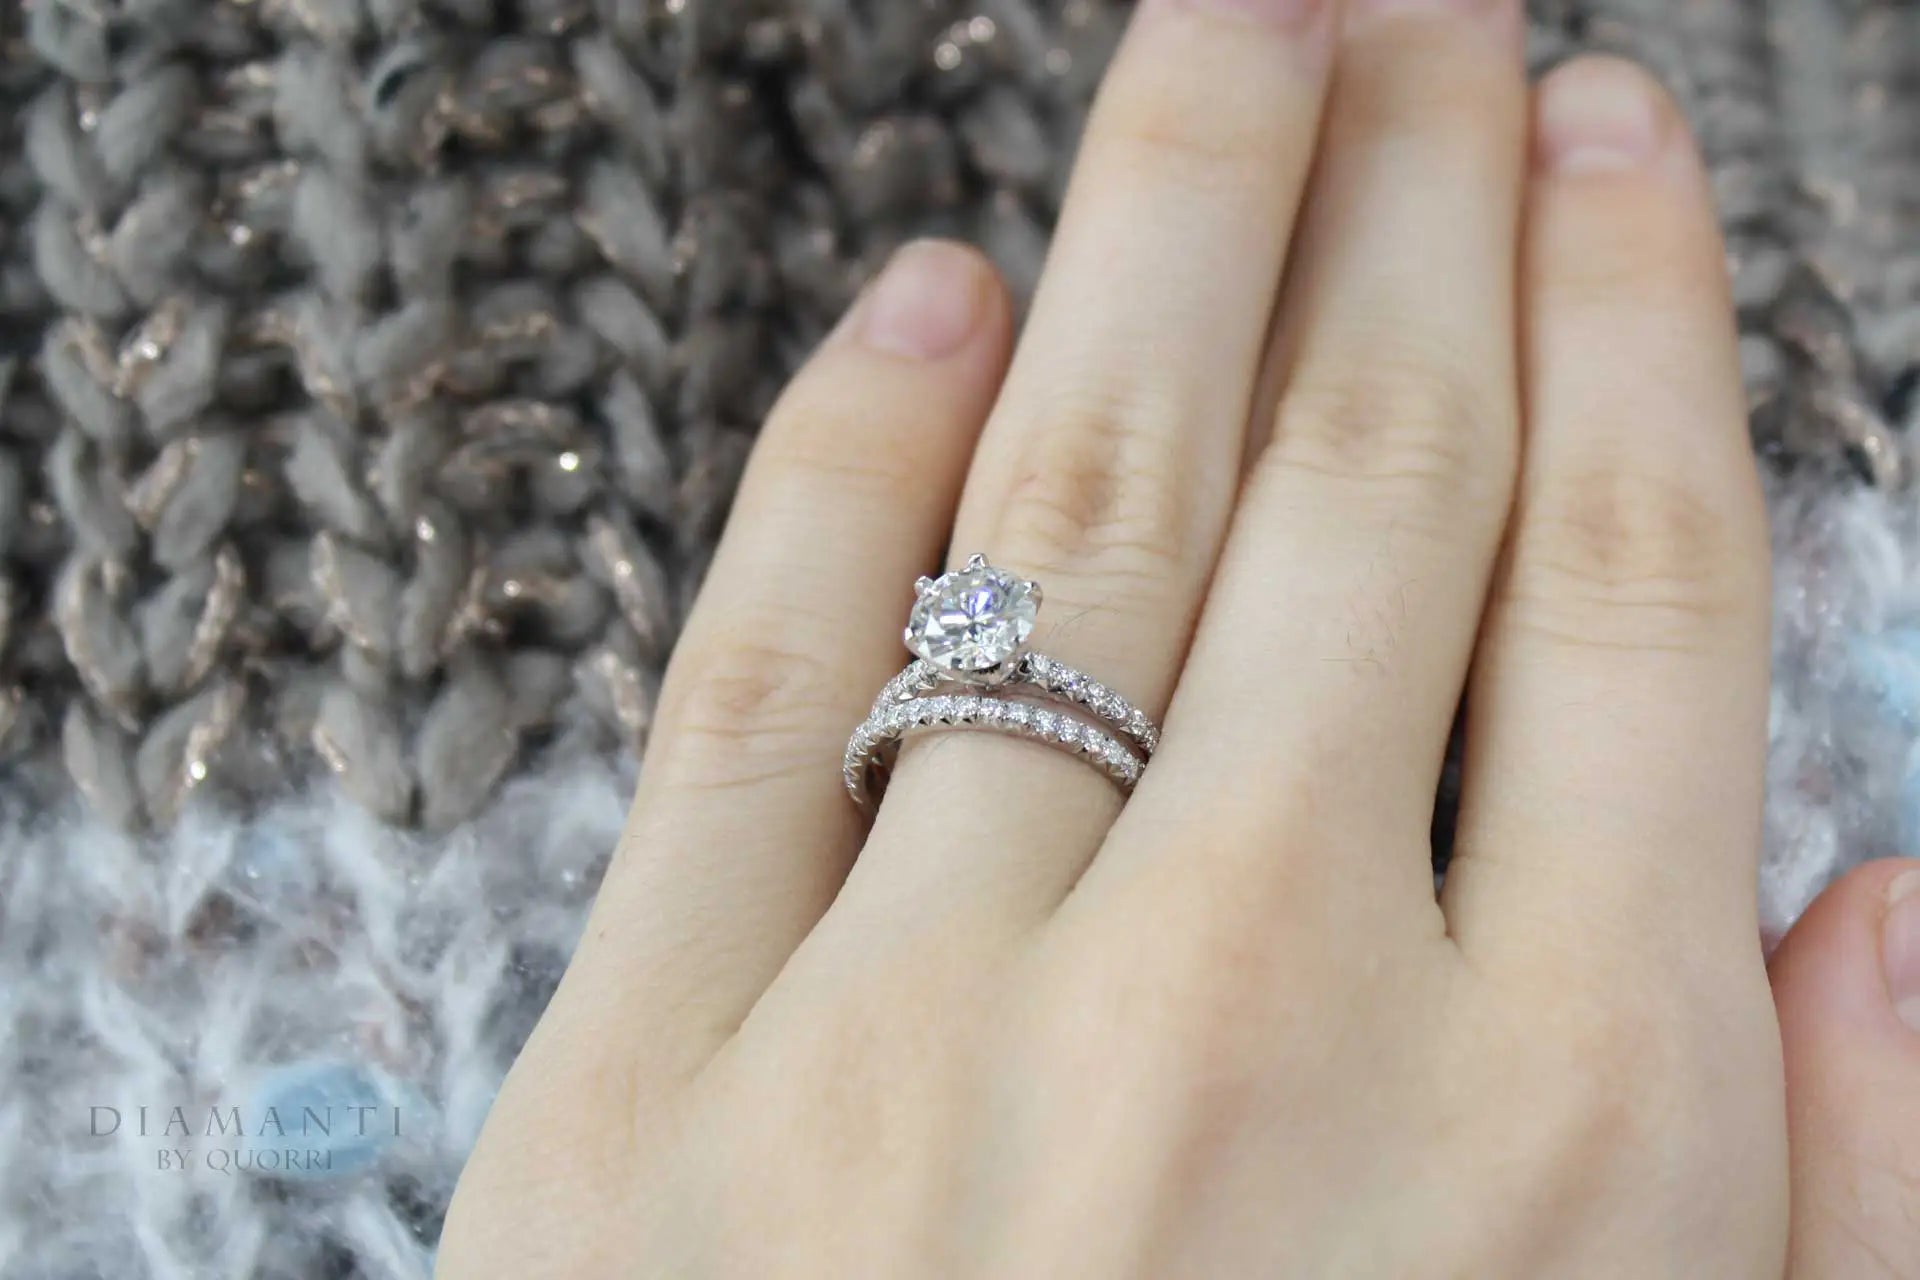 paltinum affordable designer 2 carat round lab diamond wedding ring and band Quorri